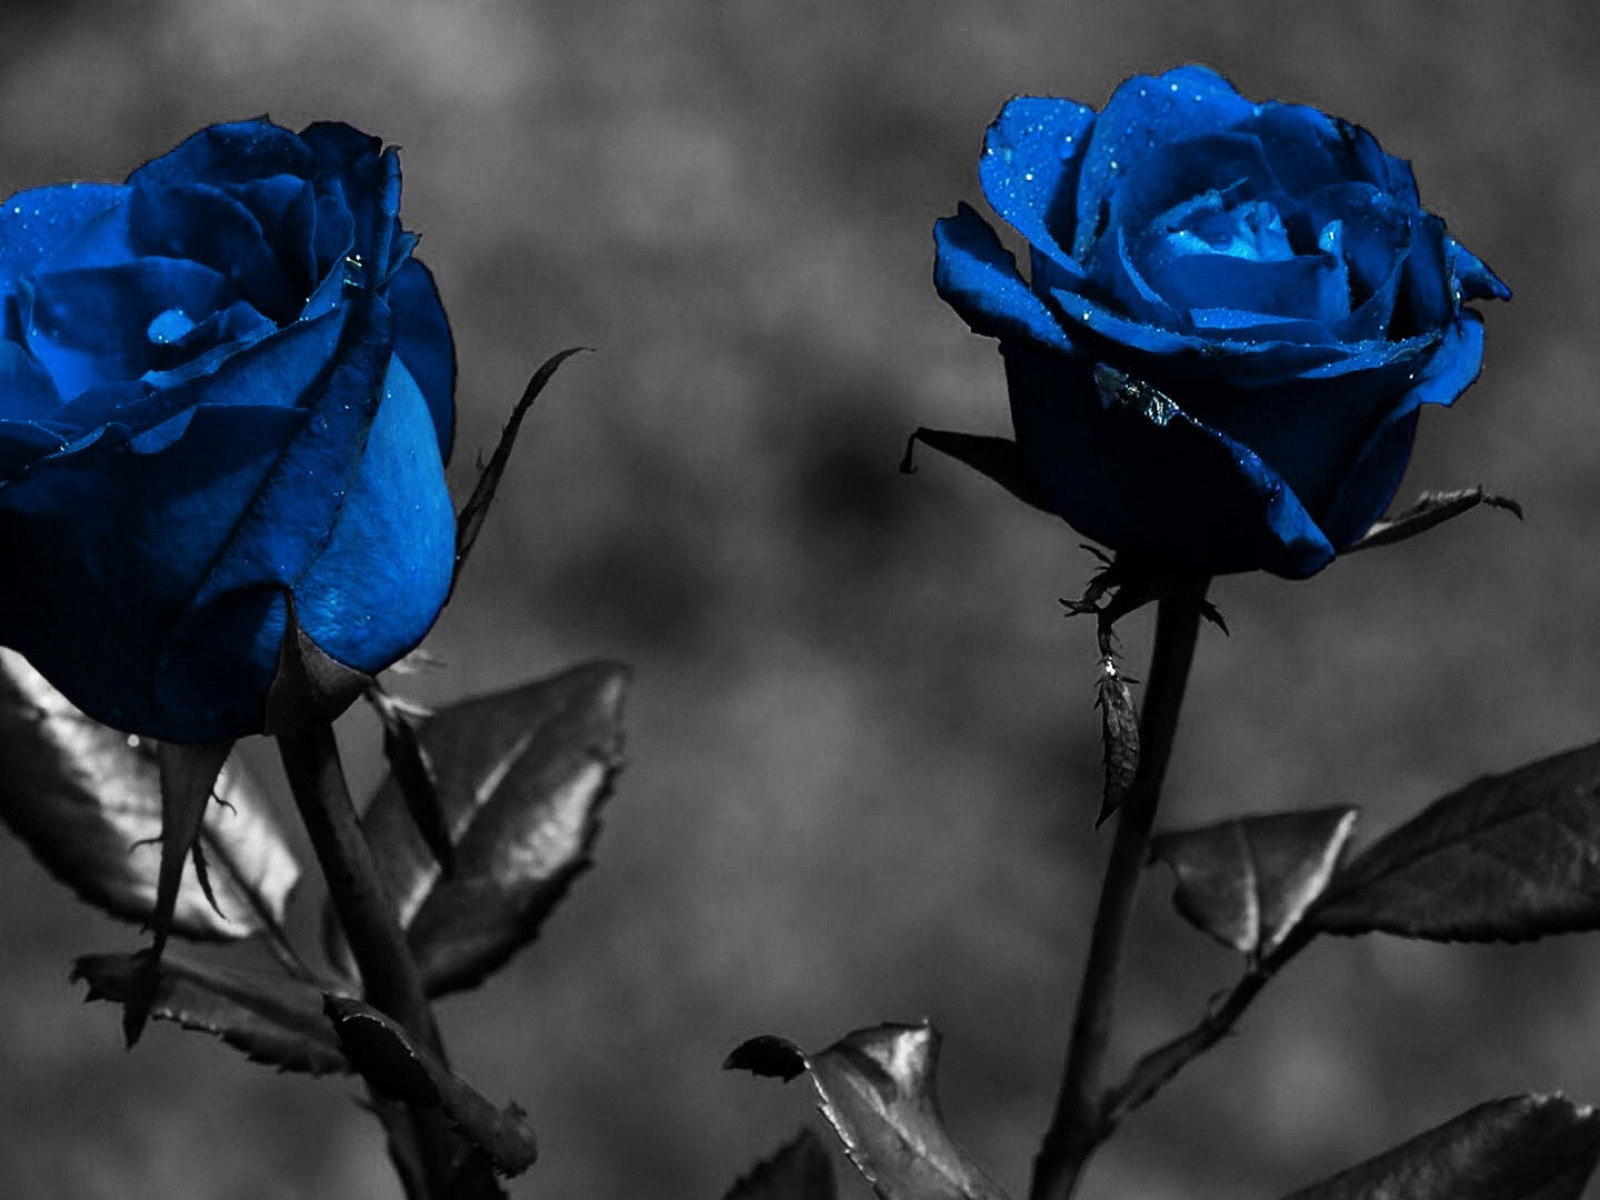 Rosas azules